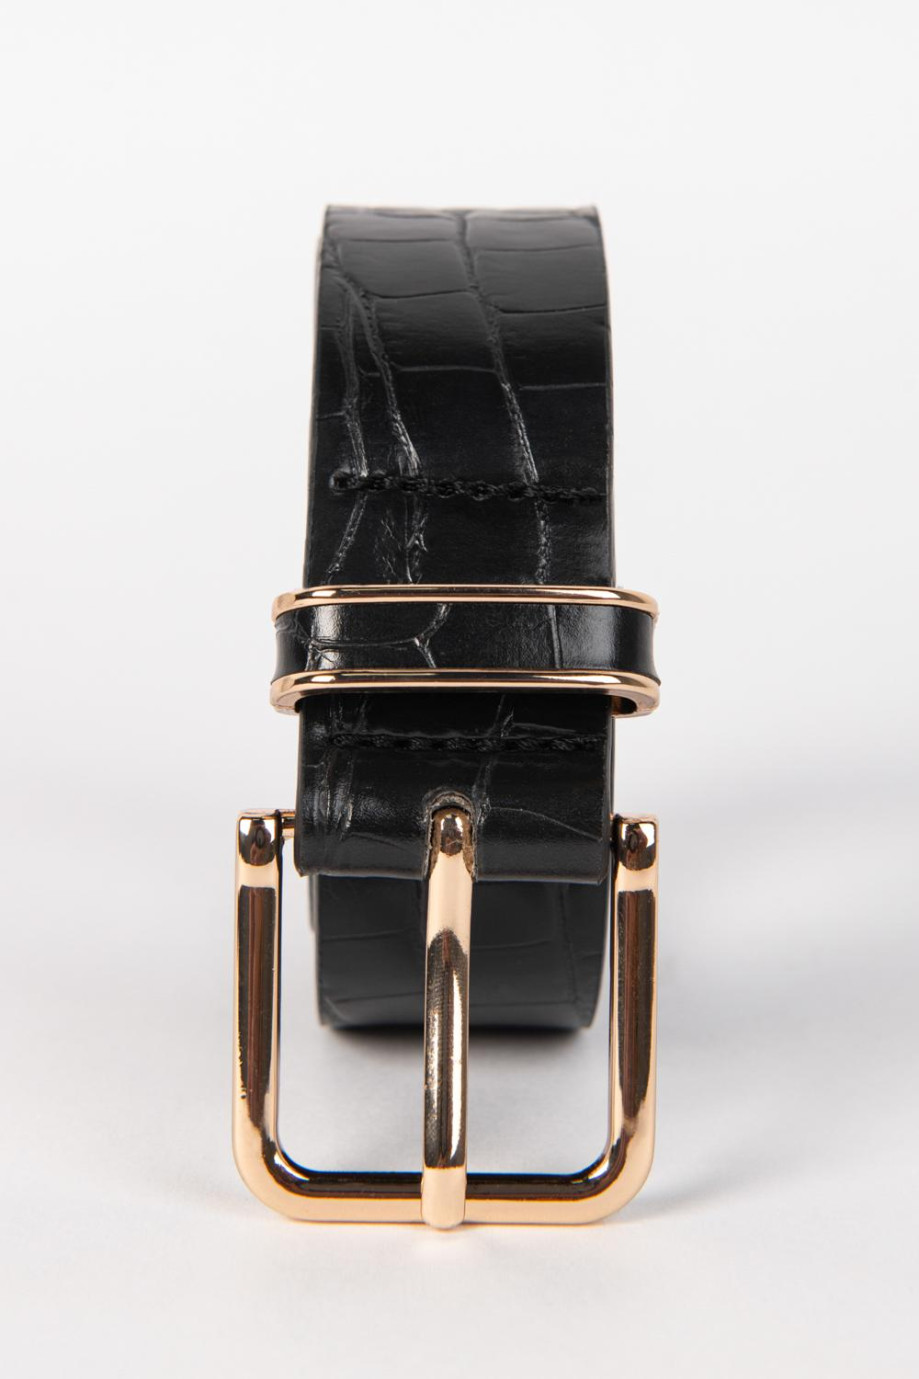 Cinturón negro con texturas y hebilla dorada cuadrada